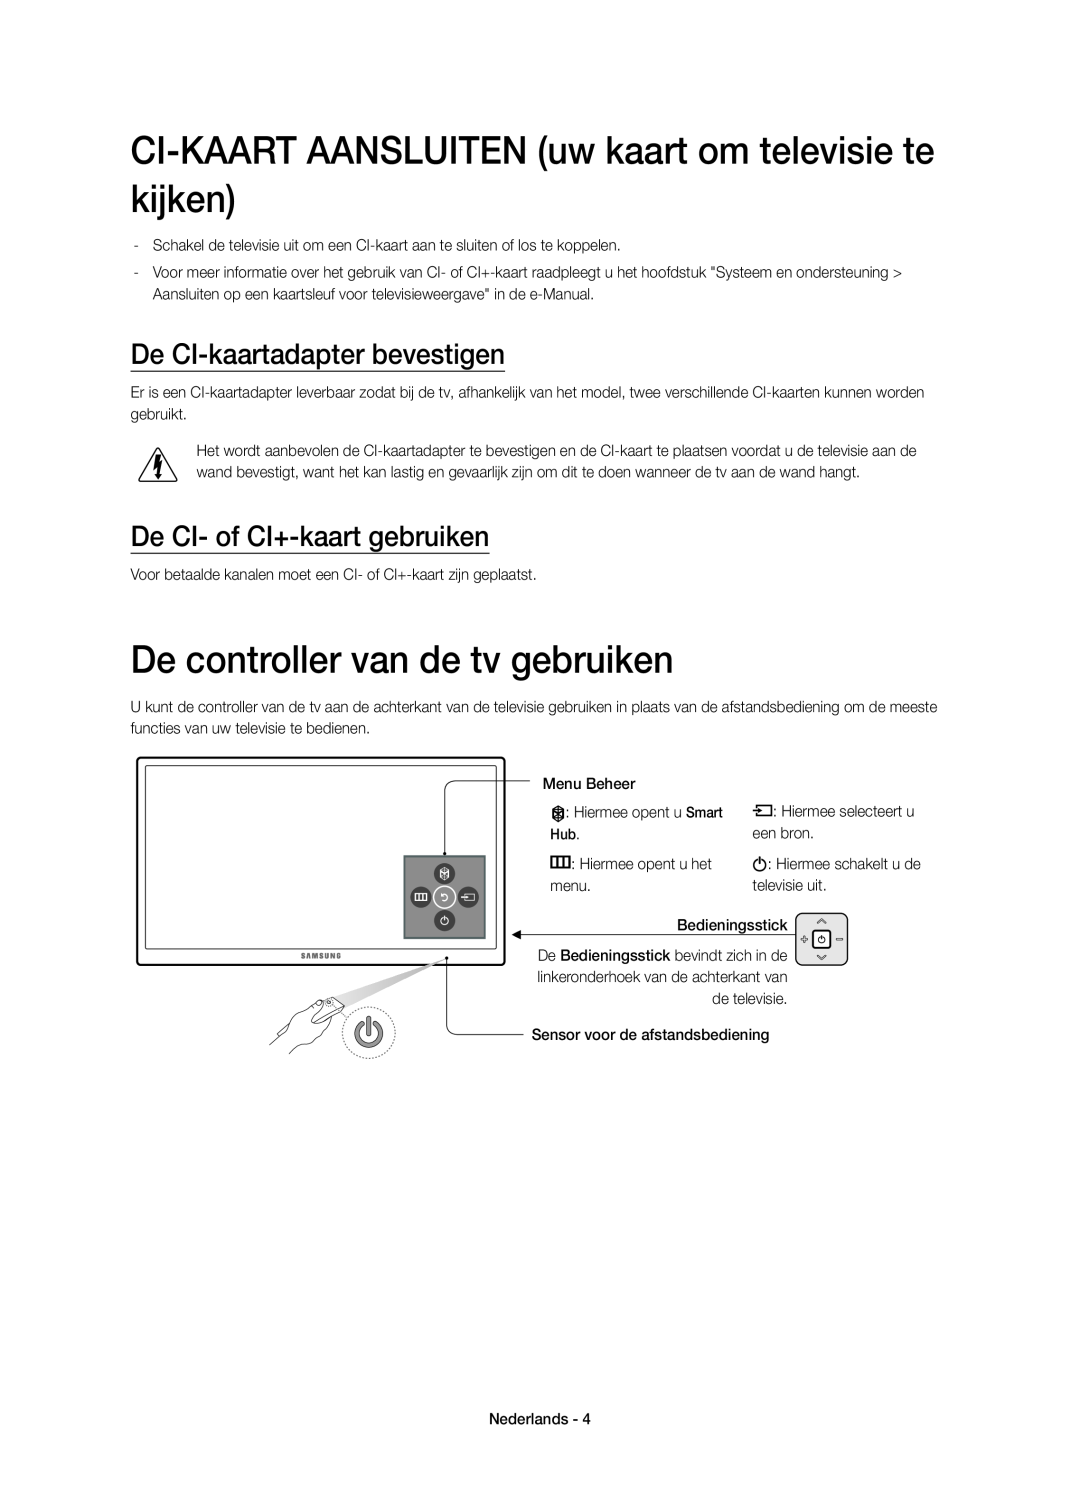 Samsung UE48JU6770UXZG manual CI-KAART AANSLUITEN uw kaart om televisie te kijken, De controller van de tv gebruiken 